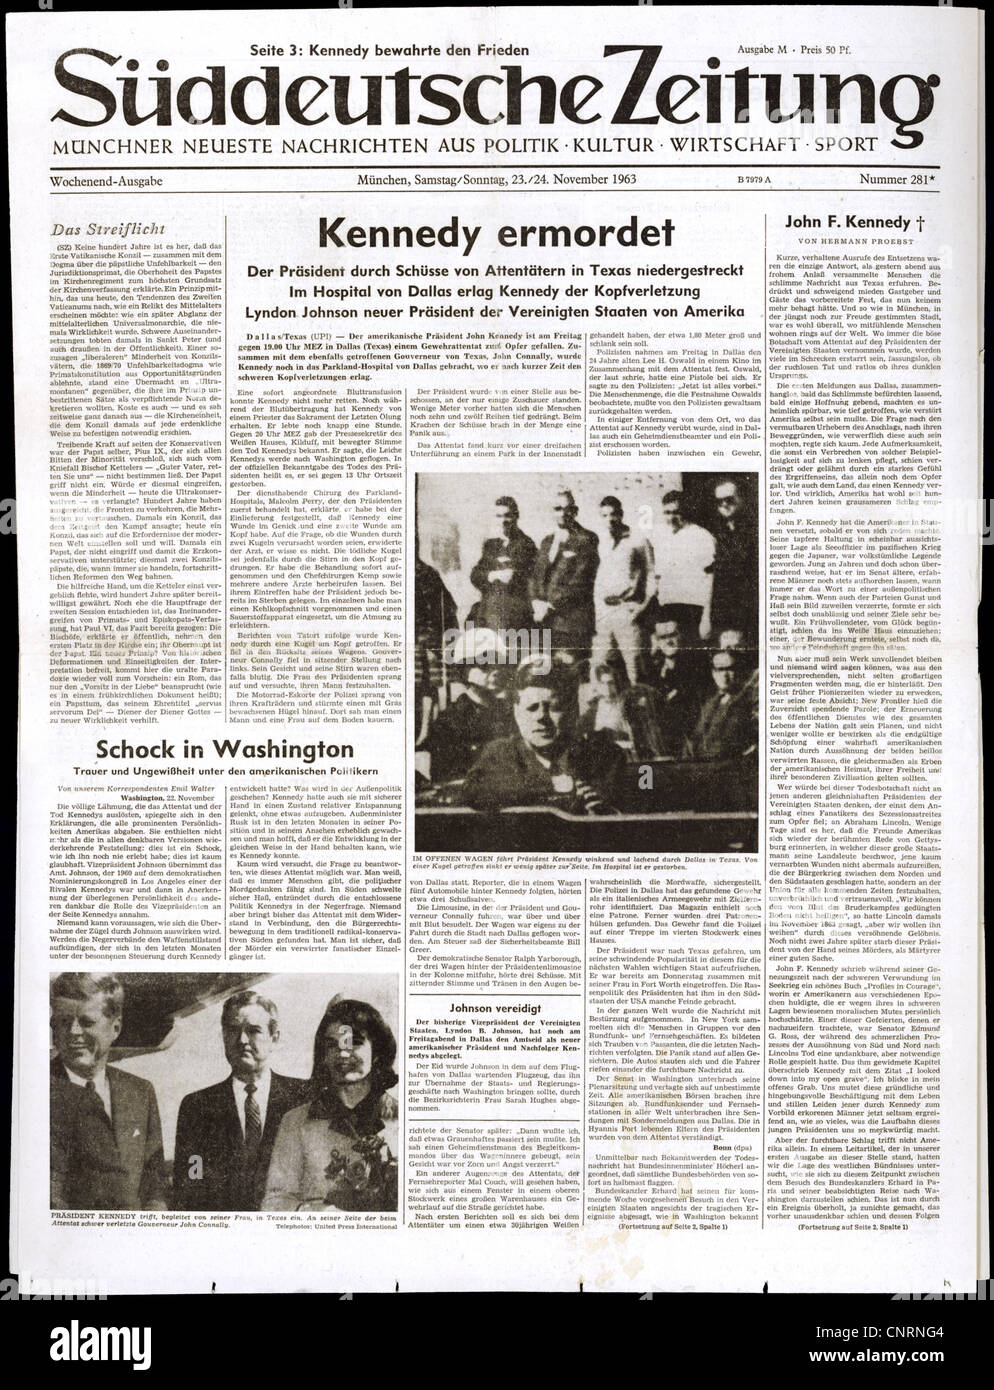 Presse / Medien, Zeitungen / Zeitschriften, 'Sueddeutsche Zeitung', Nr. 281, München, 23./24.11.1963, Titelseite, Überschrift: 'Kennedy Assassined', Zusatzrechte-Clearences-nicht vorhanden Stockfoto